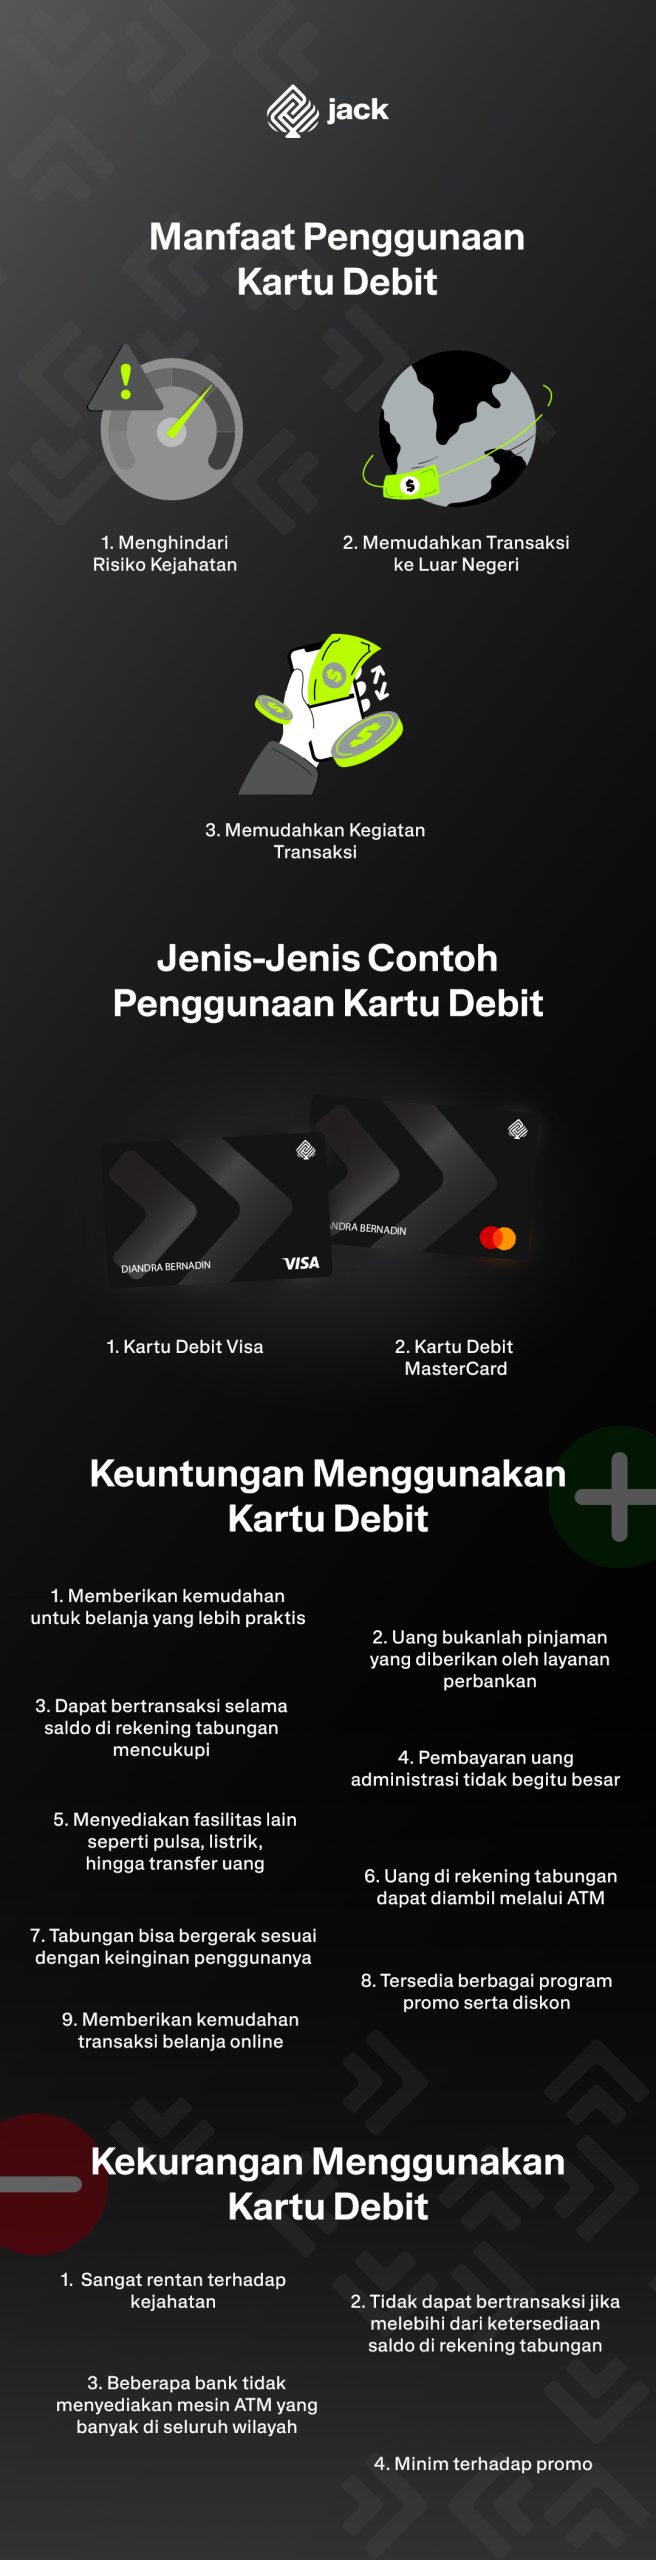 Manfaat Penggunaan Kartu Debit dalam Infografis